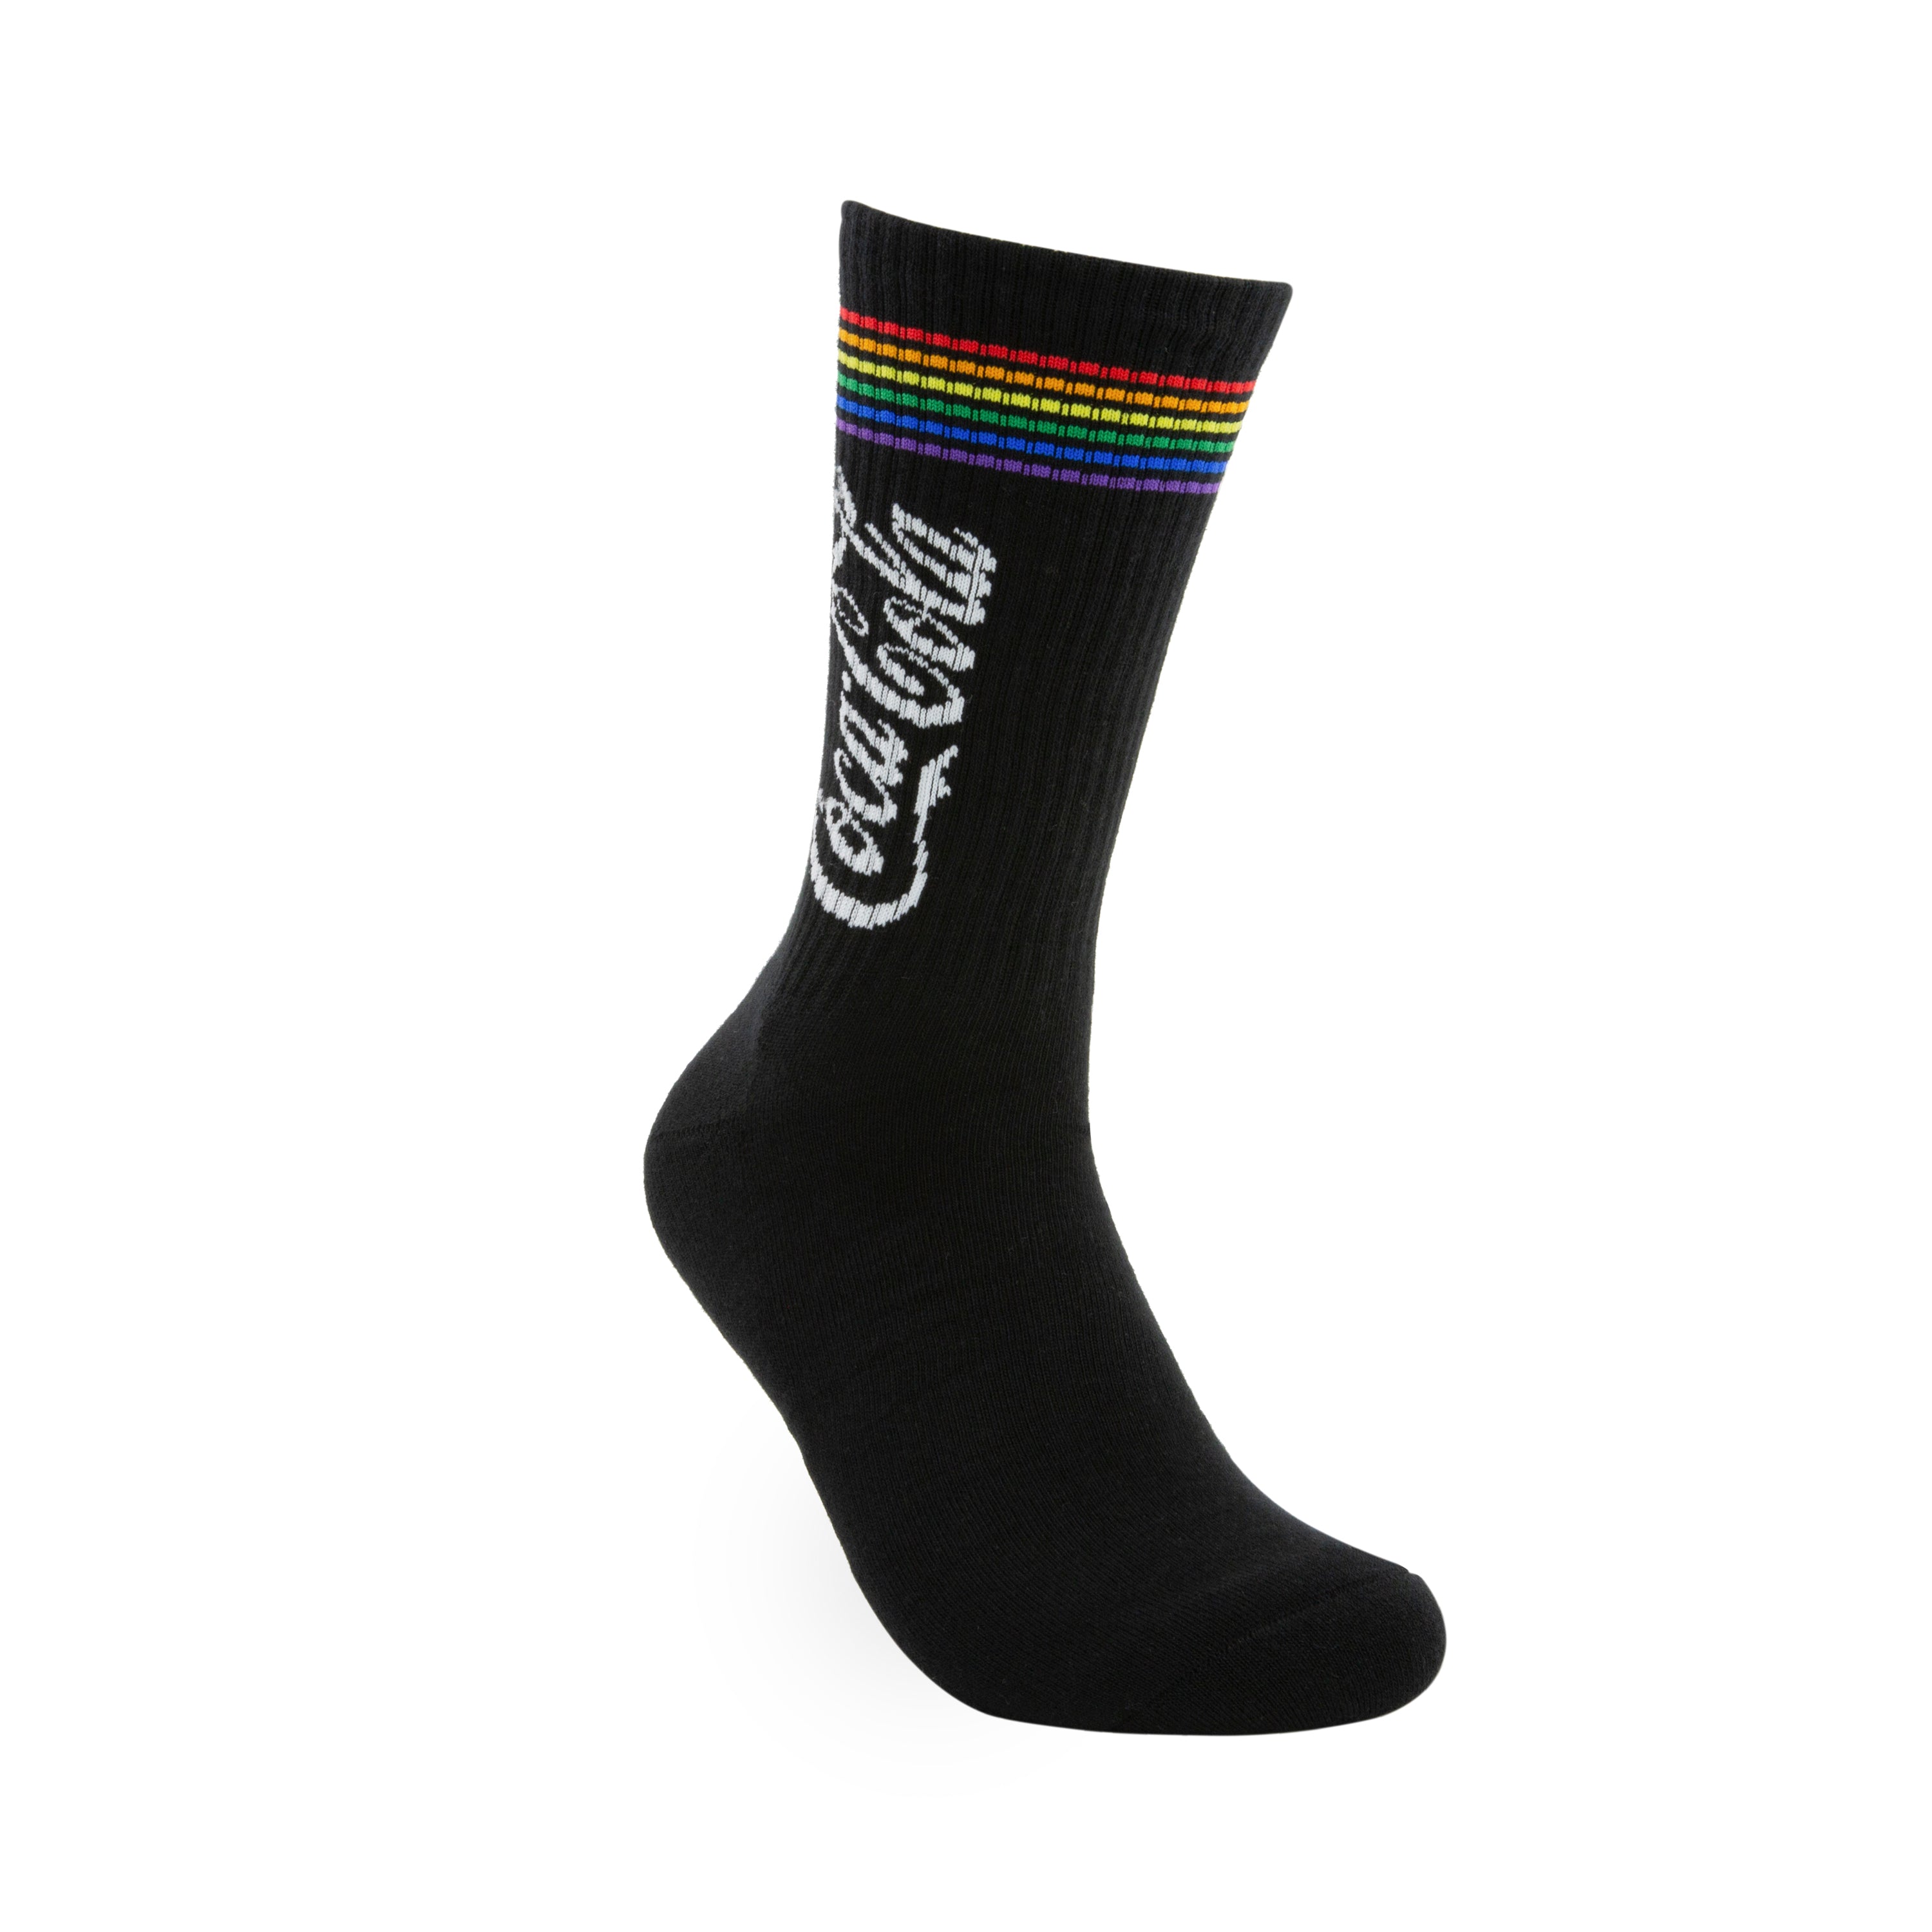 Coke Pride Stripe Sneaker Socks 2 Pairs Pack - The Sockery